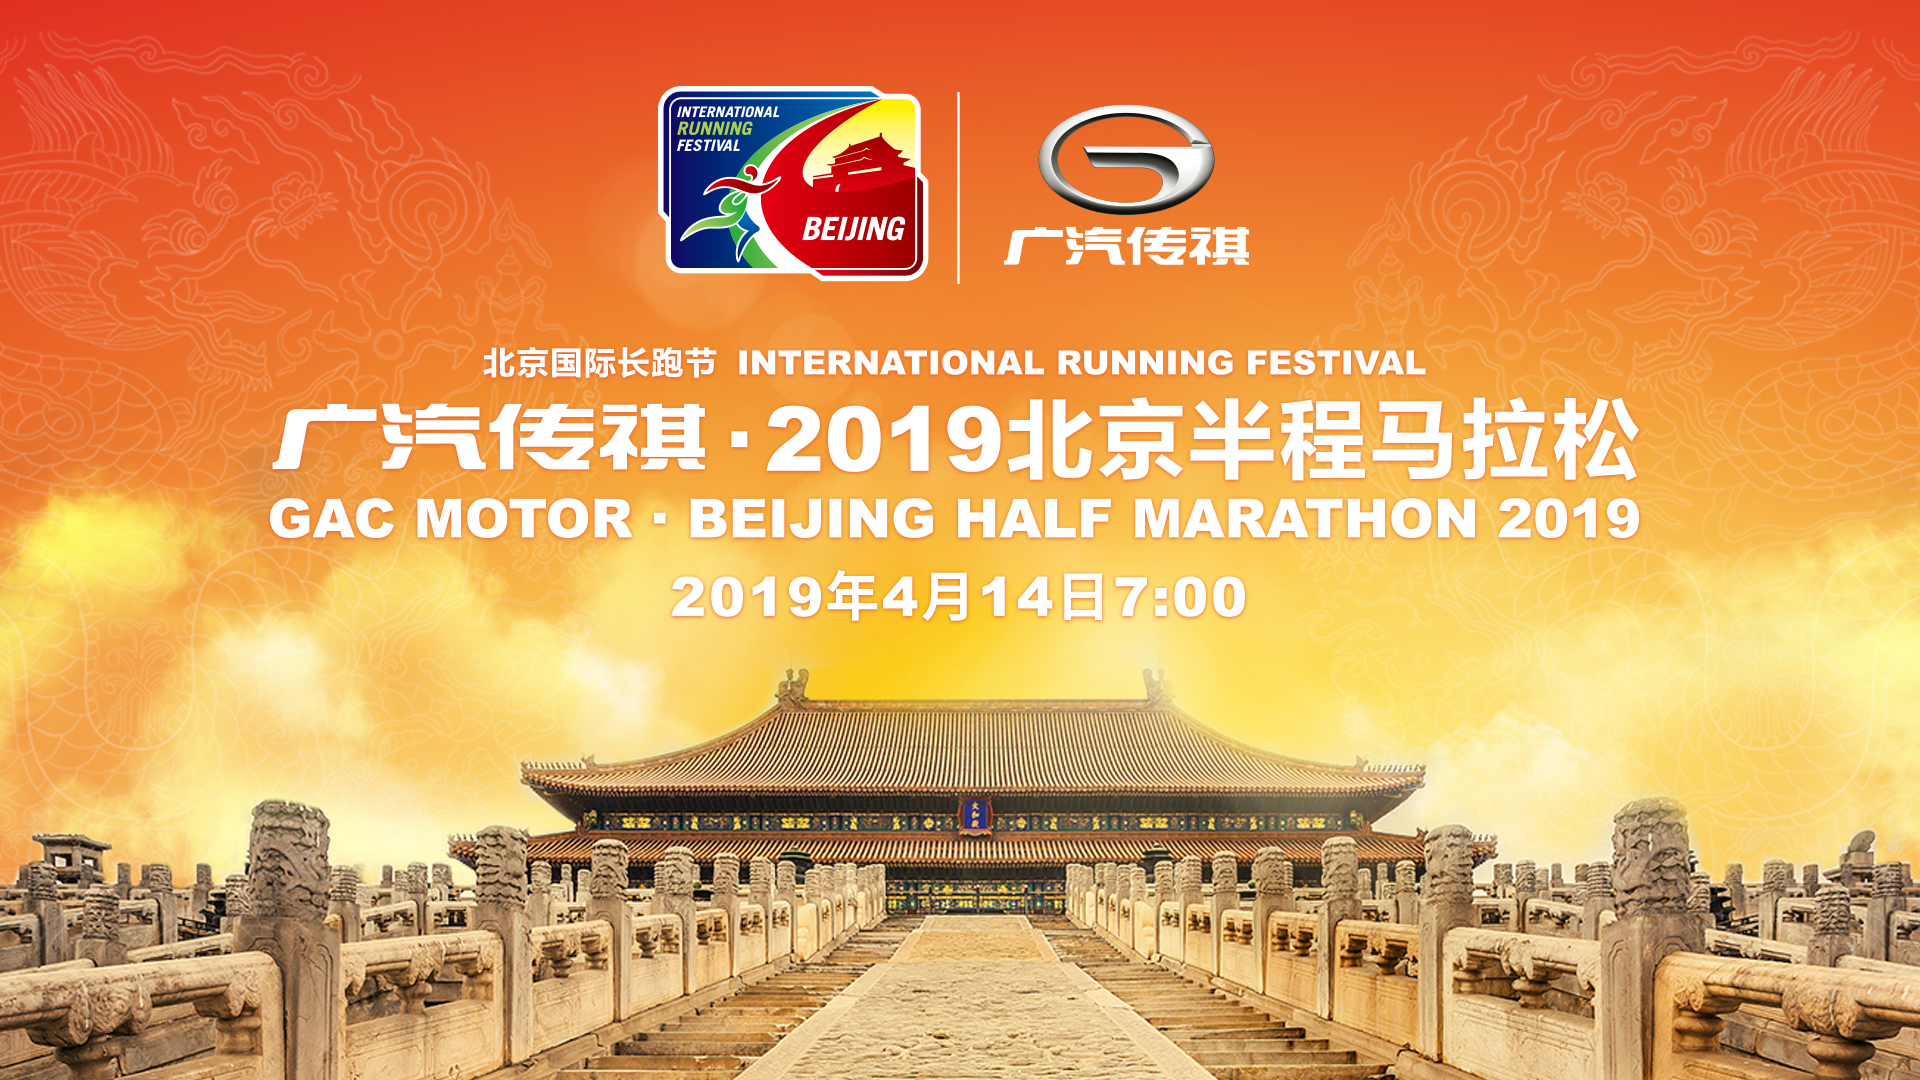 2019北京国际长跑节-北京半程马拉松